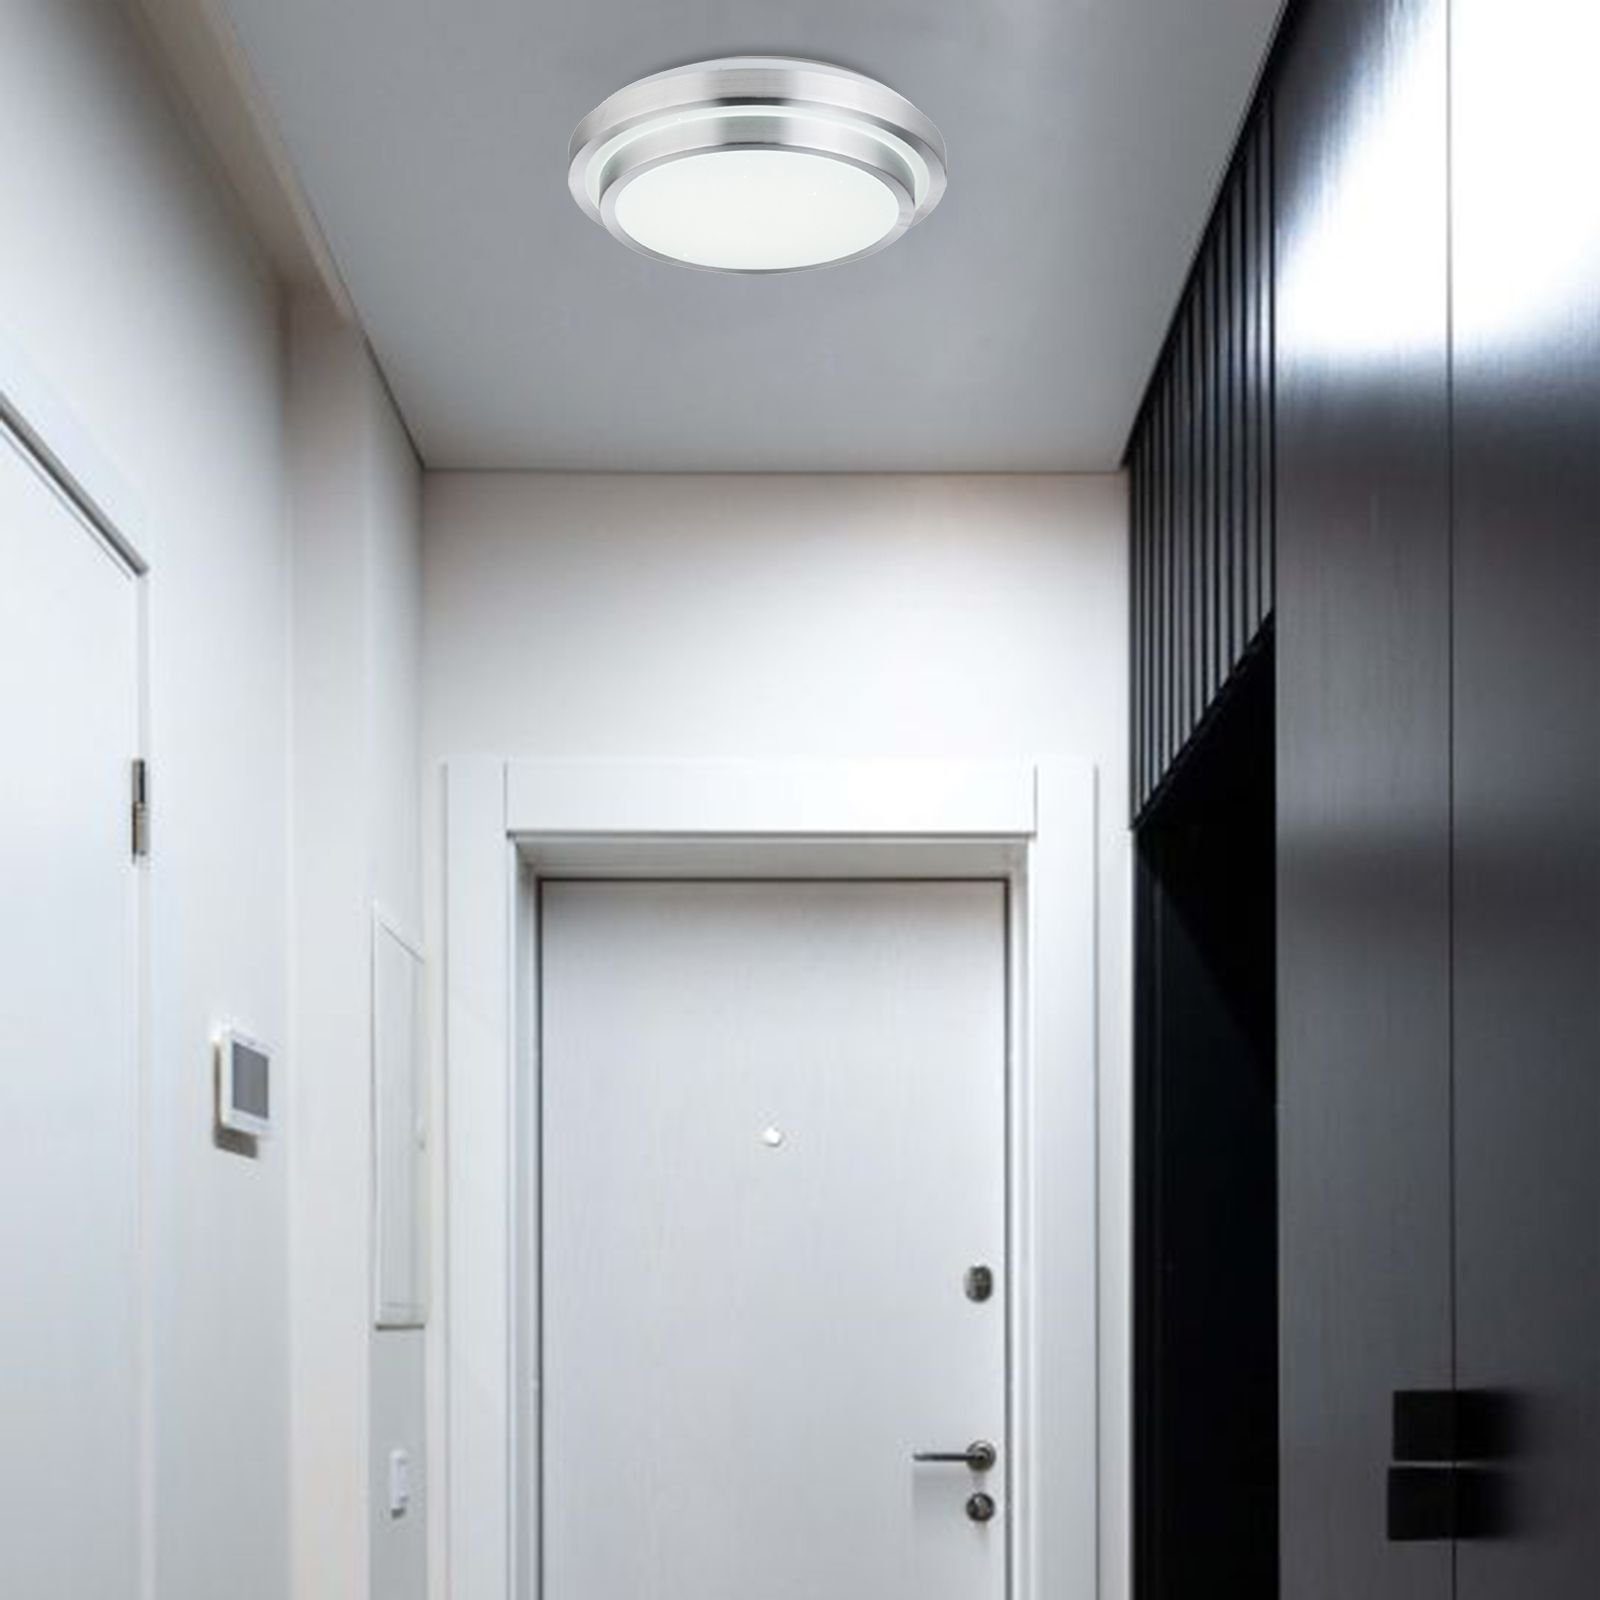 Globo Deckenleuchte GLOBO Deckenleuchte Wohnzimmer Deckenlampe dimmbar Fernbedienung LED